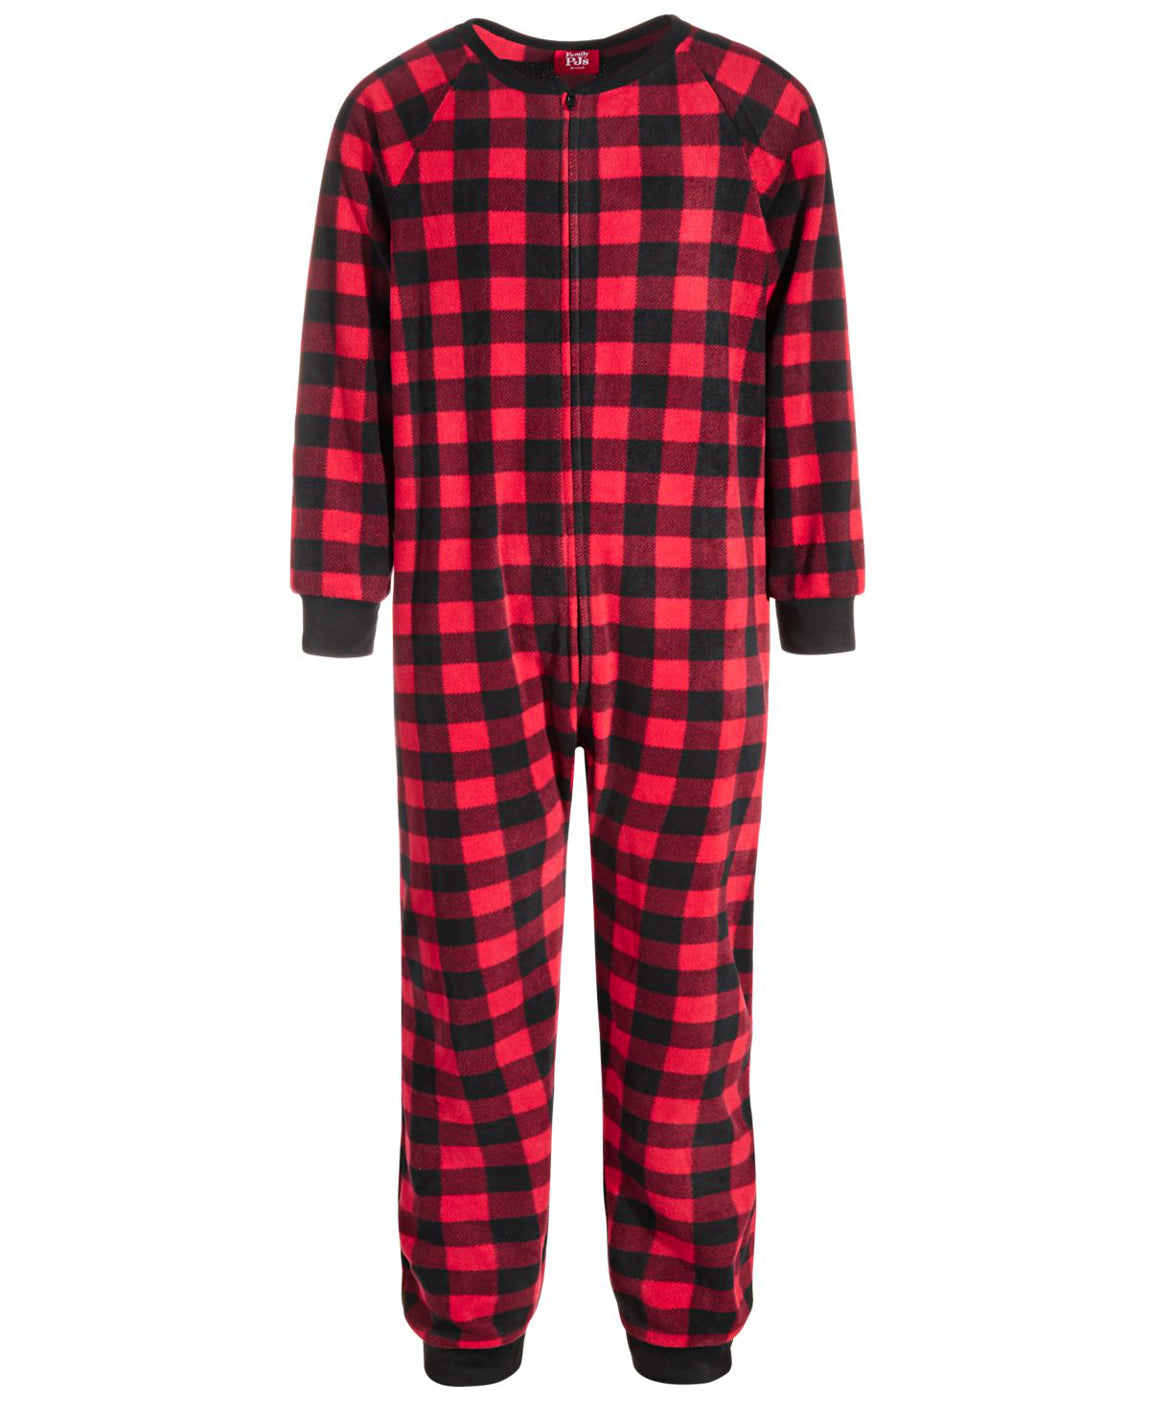 Family Pajamas Little & Big Kids Matching 1 Piece Red Check Printed Pajamas